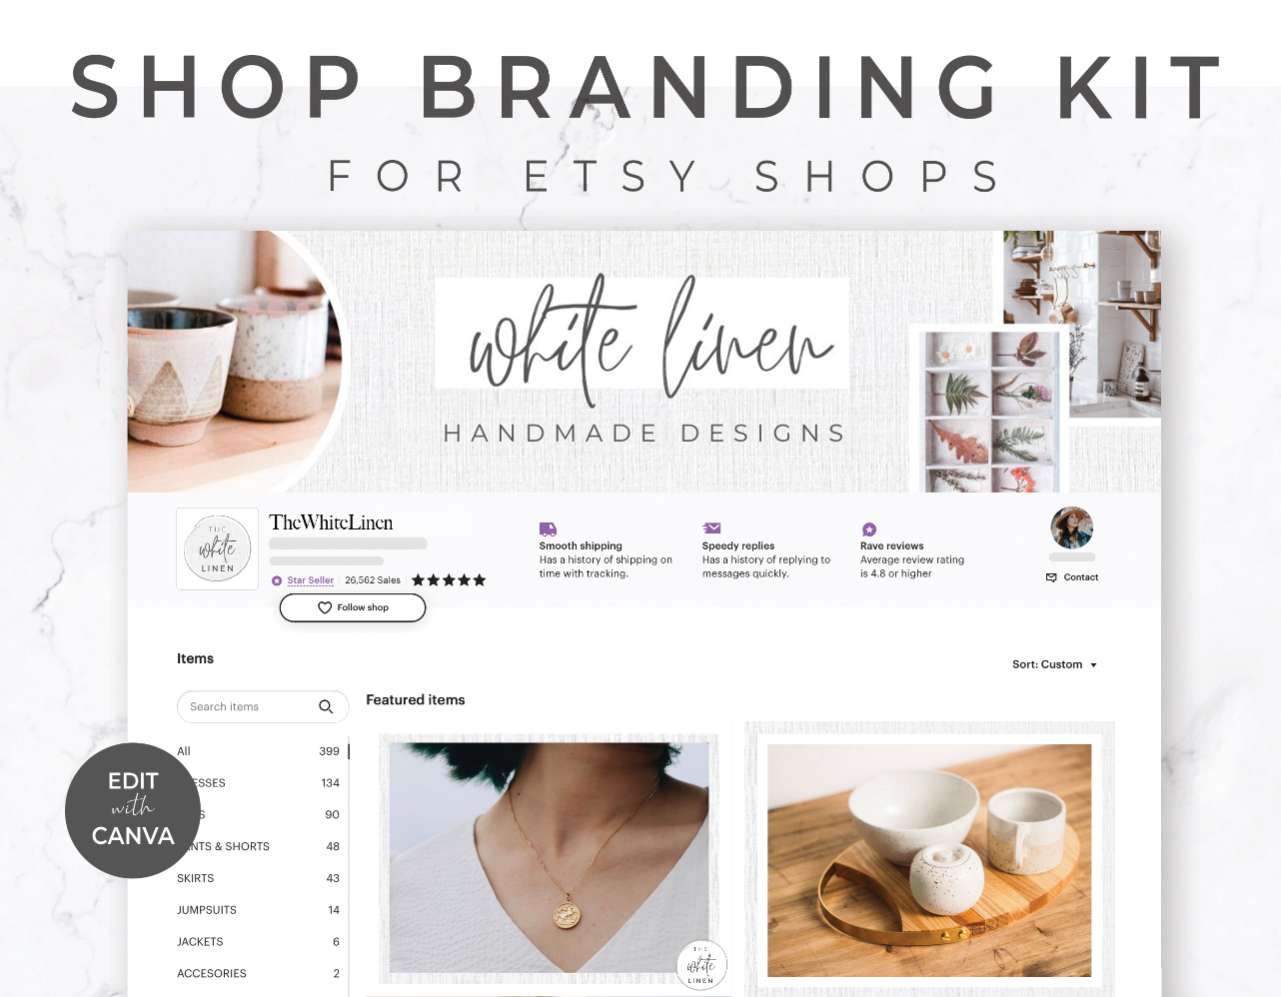 Etsy Shop Branding Kit for Canva – White Linen